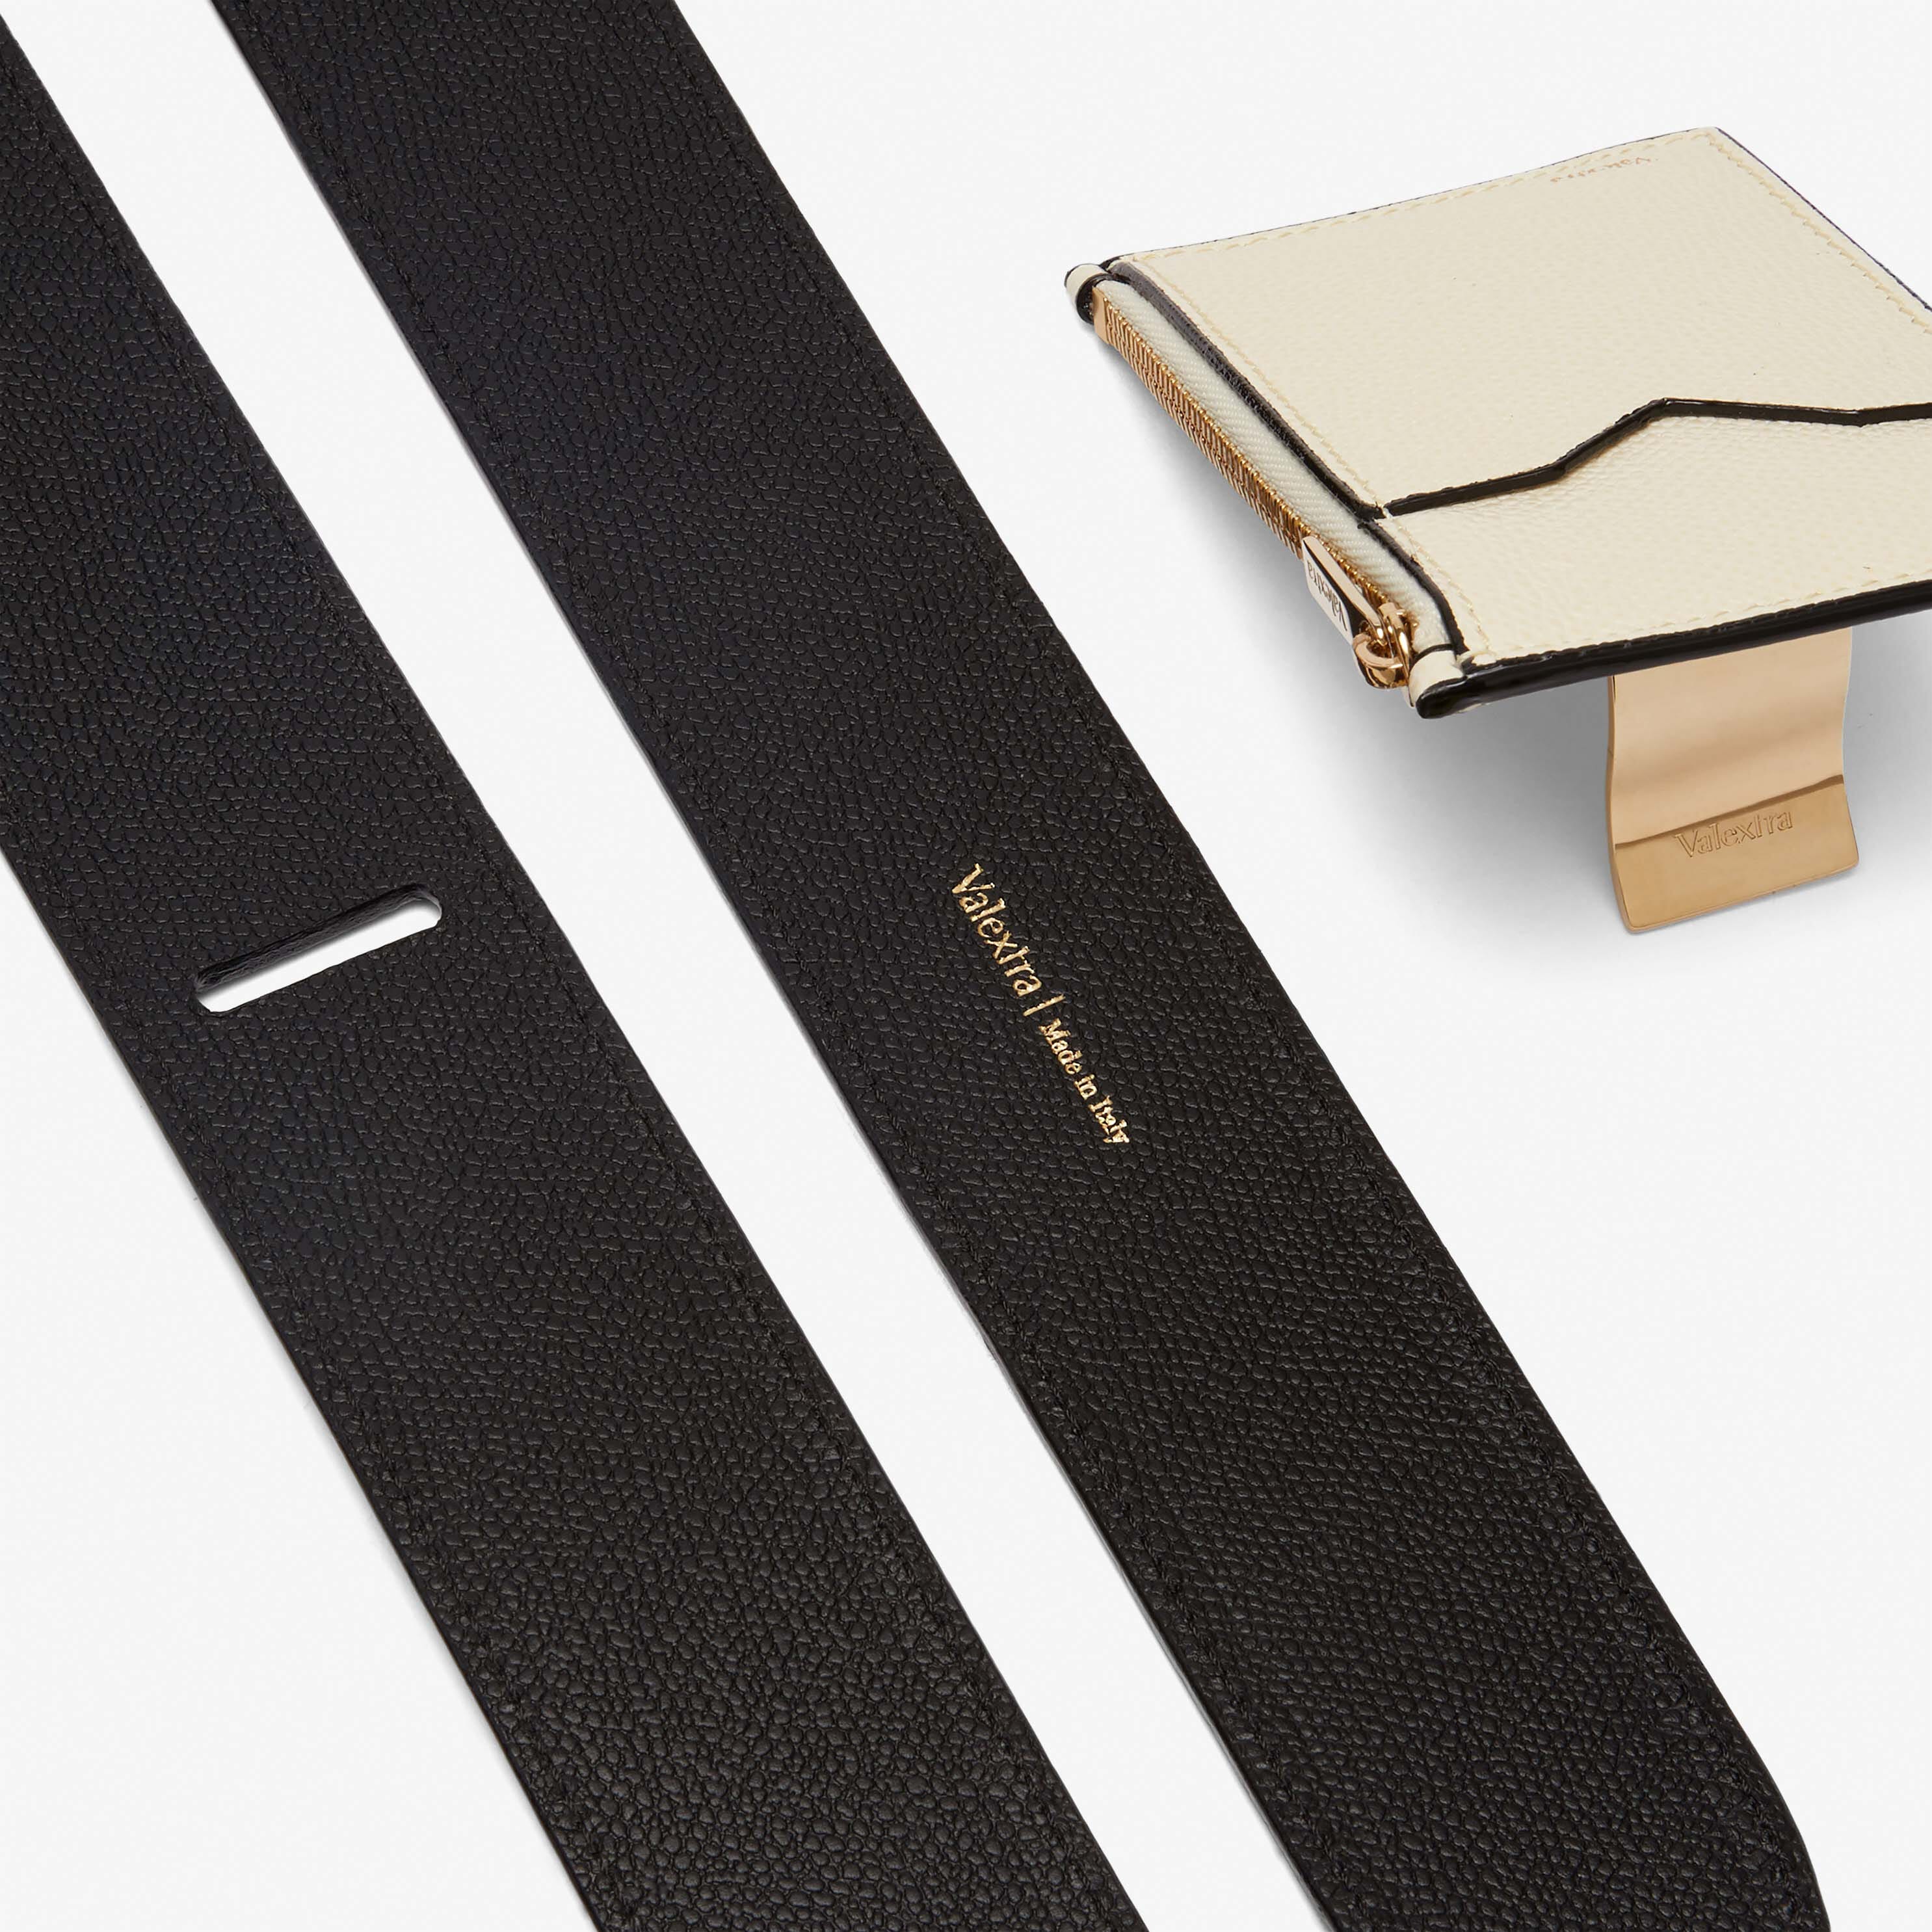 Shoulder Strap with Zip Pocket - Black/Pergamena White - Vitello VS - Valextra - 4